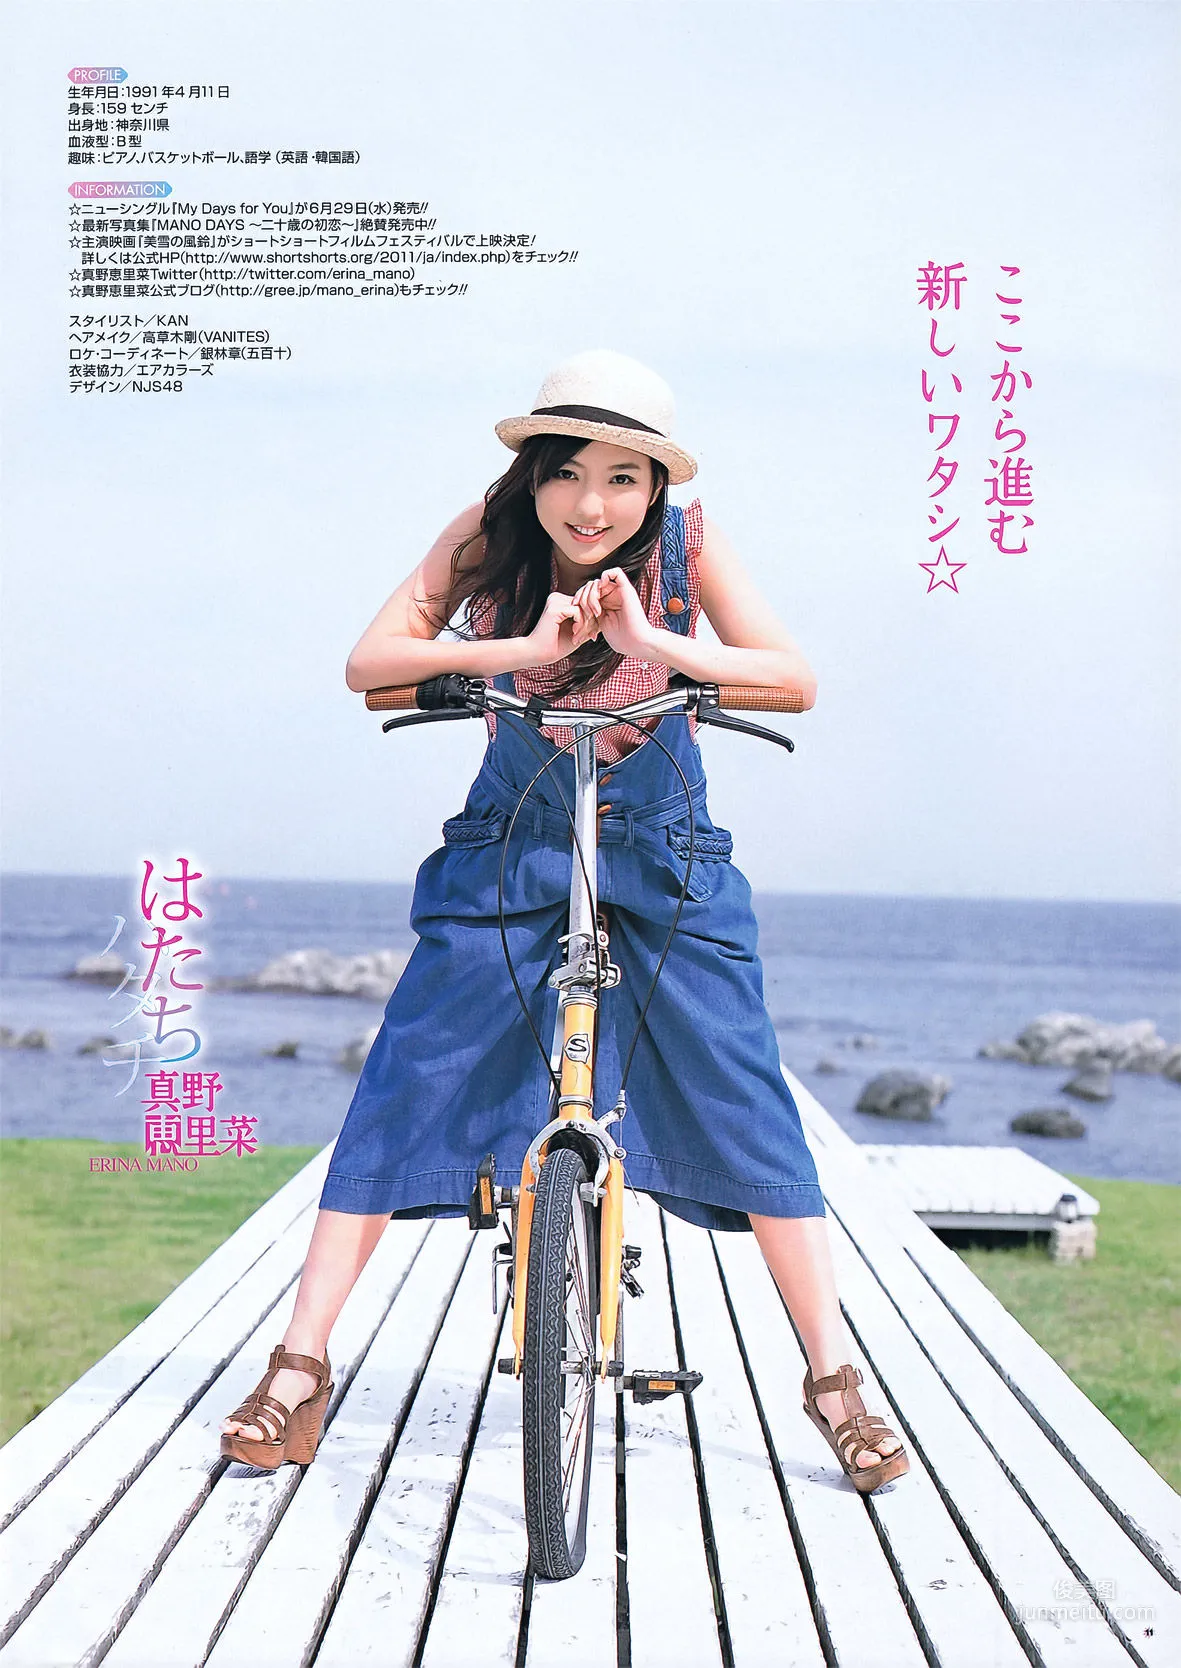 [Young Gangan] 真野恵里菜 Erina Mano 2011年No.13 写真杂志8